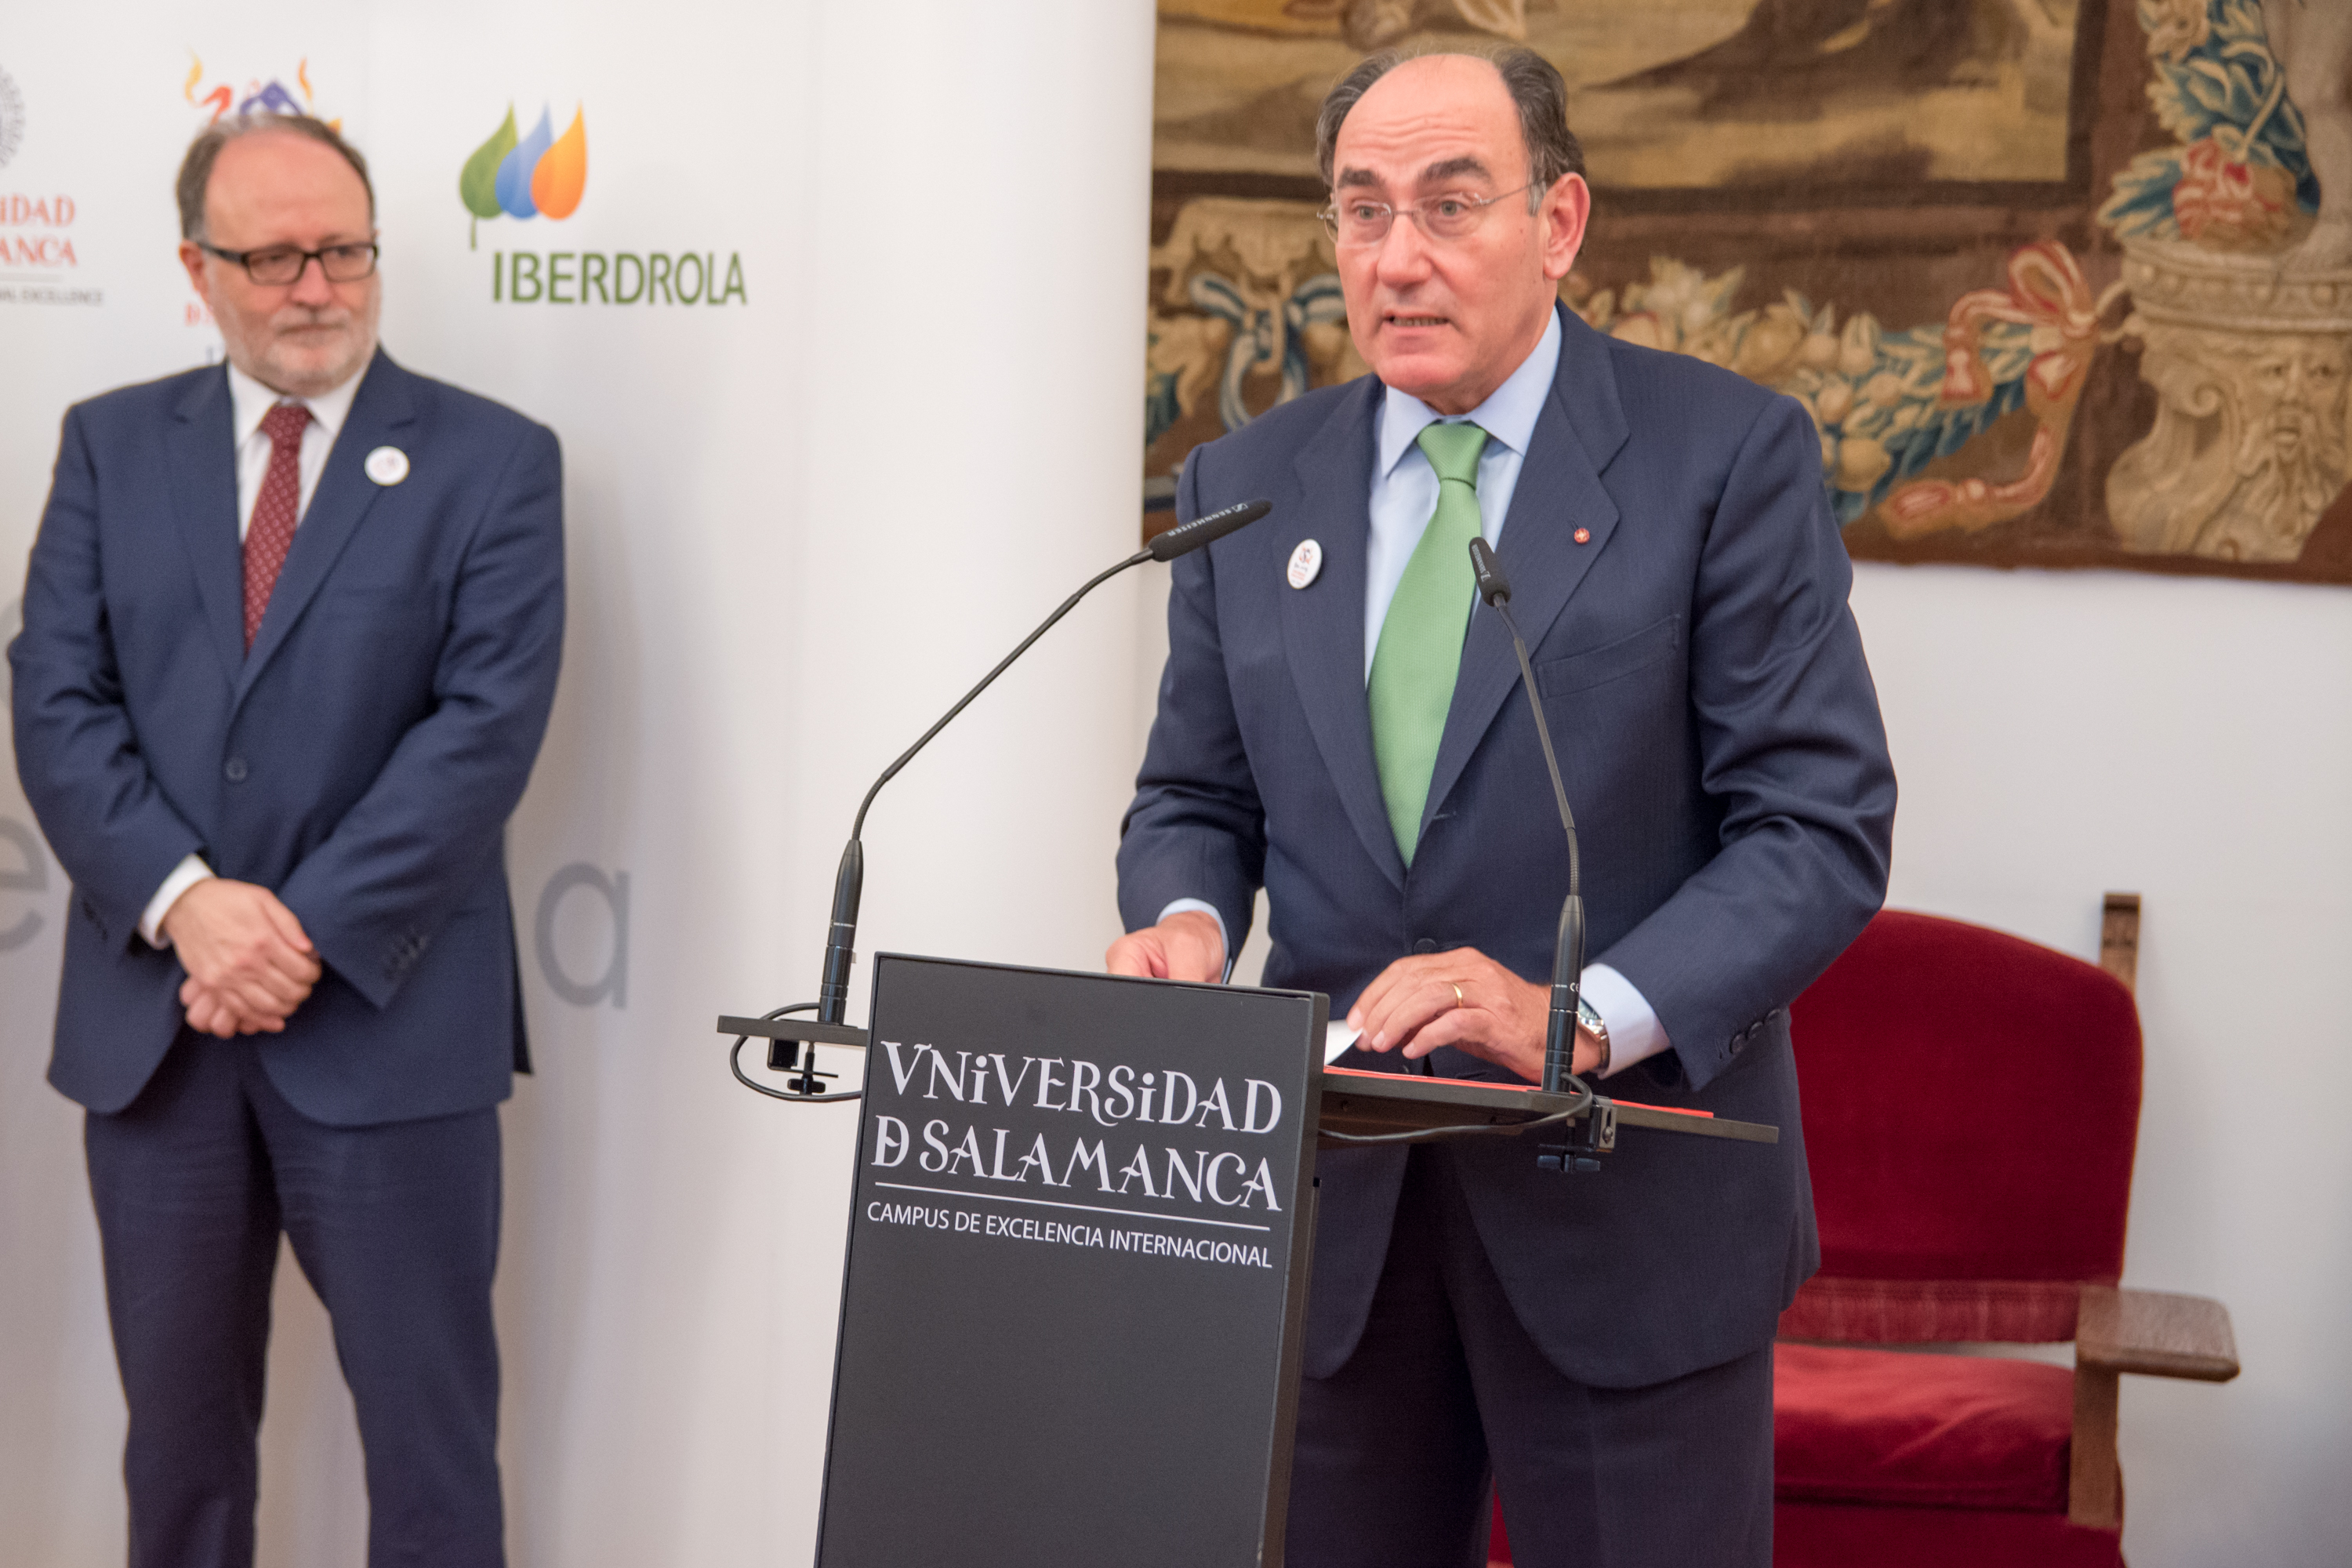 La Cátedra Iberdrola VIII Centenario de la Universidad de Salamanca impulsará la investigación en las áreas de la energía y la sostenibilidad